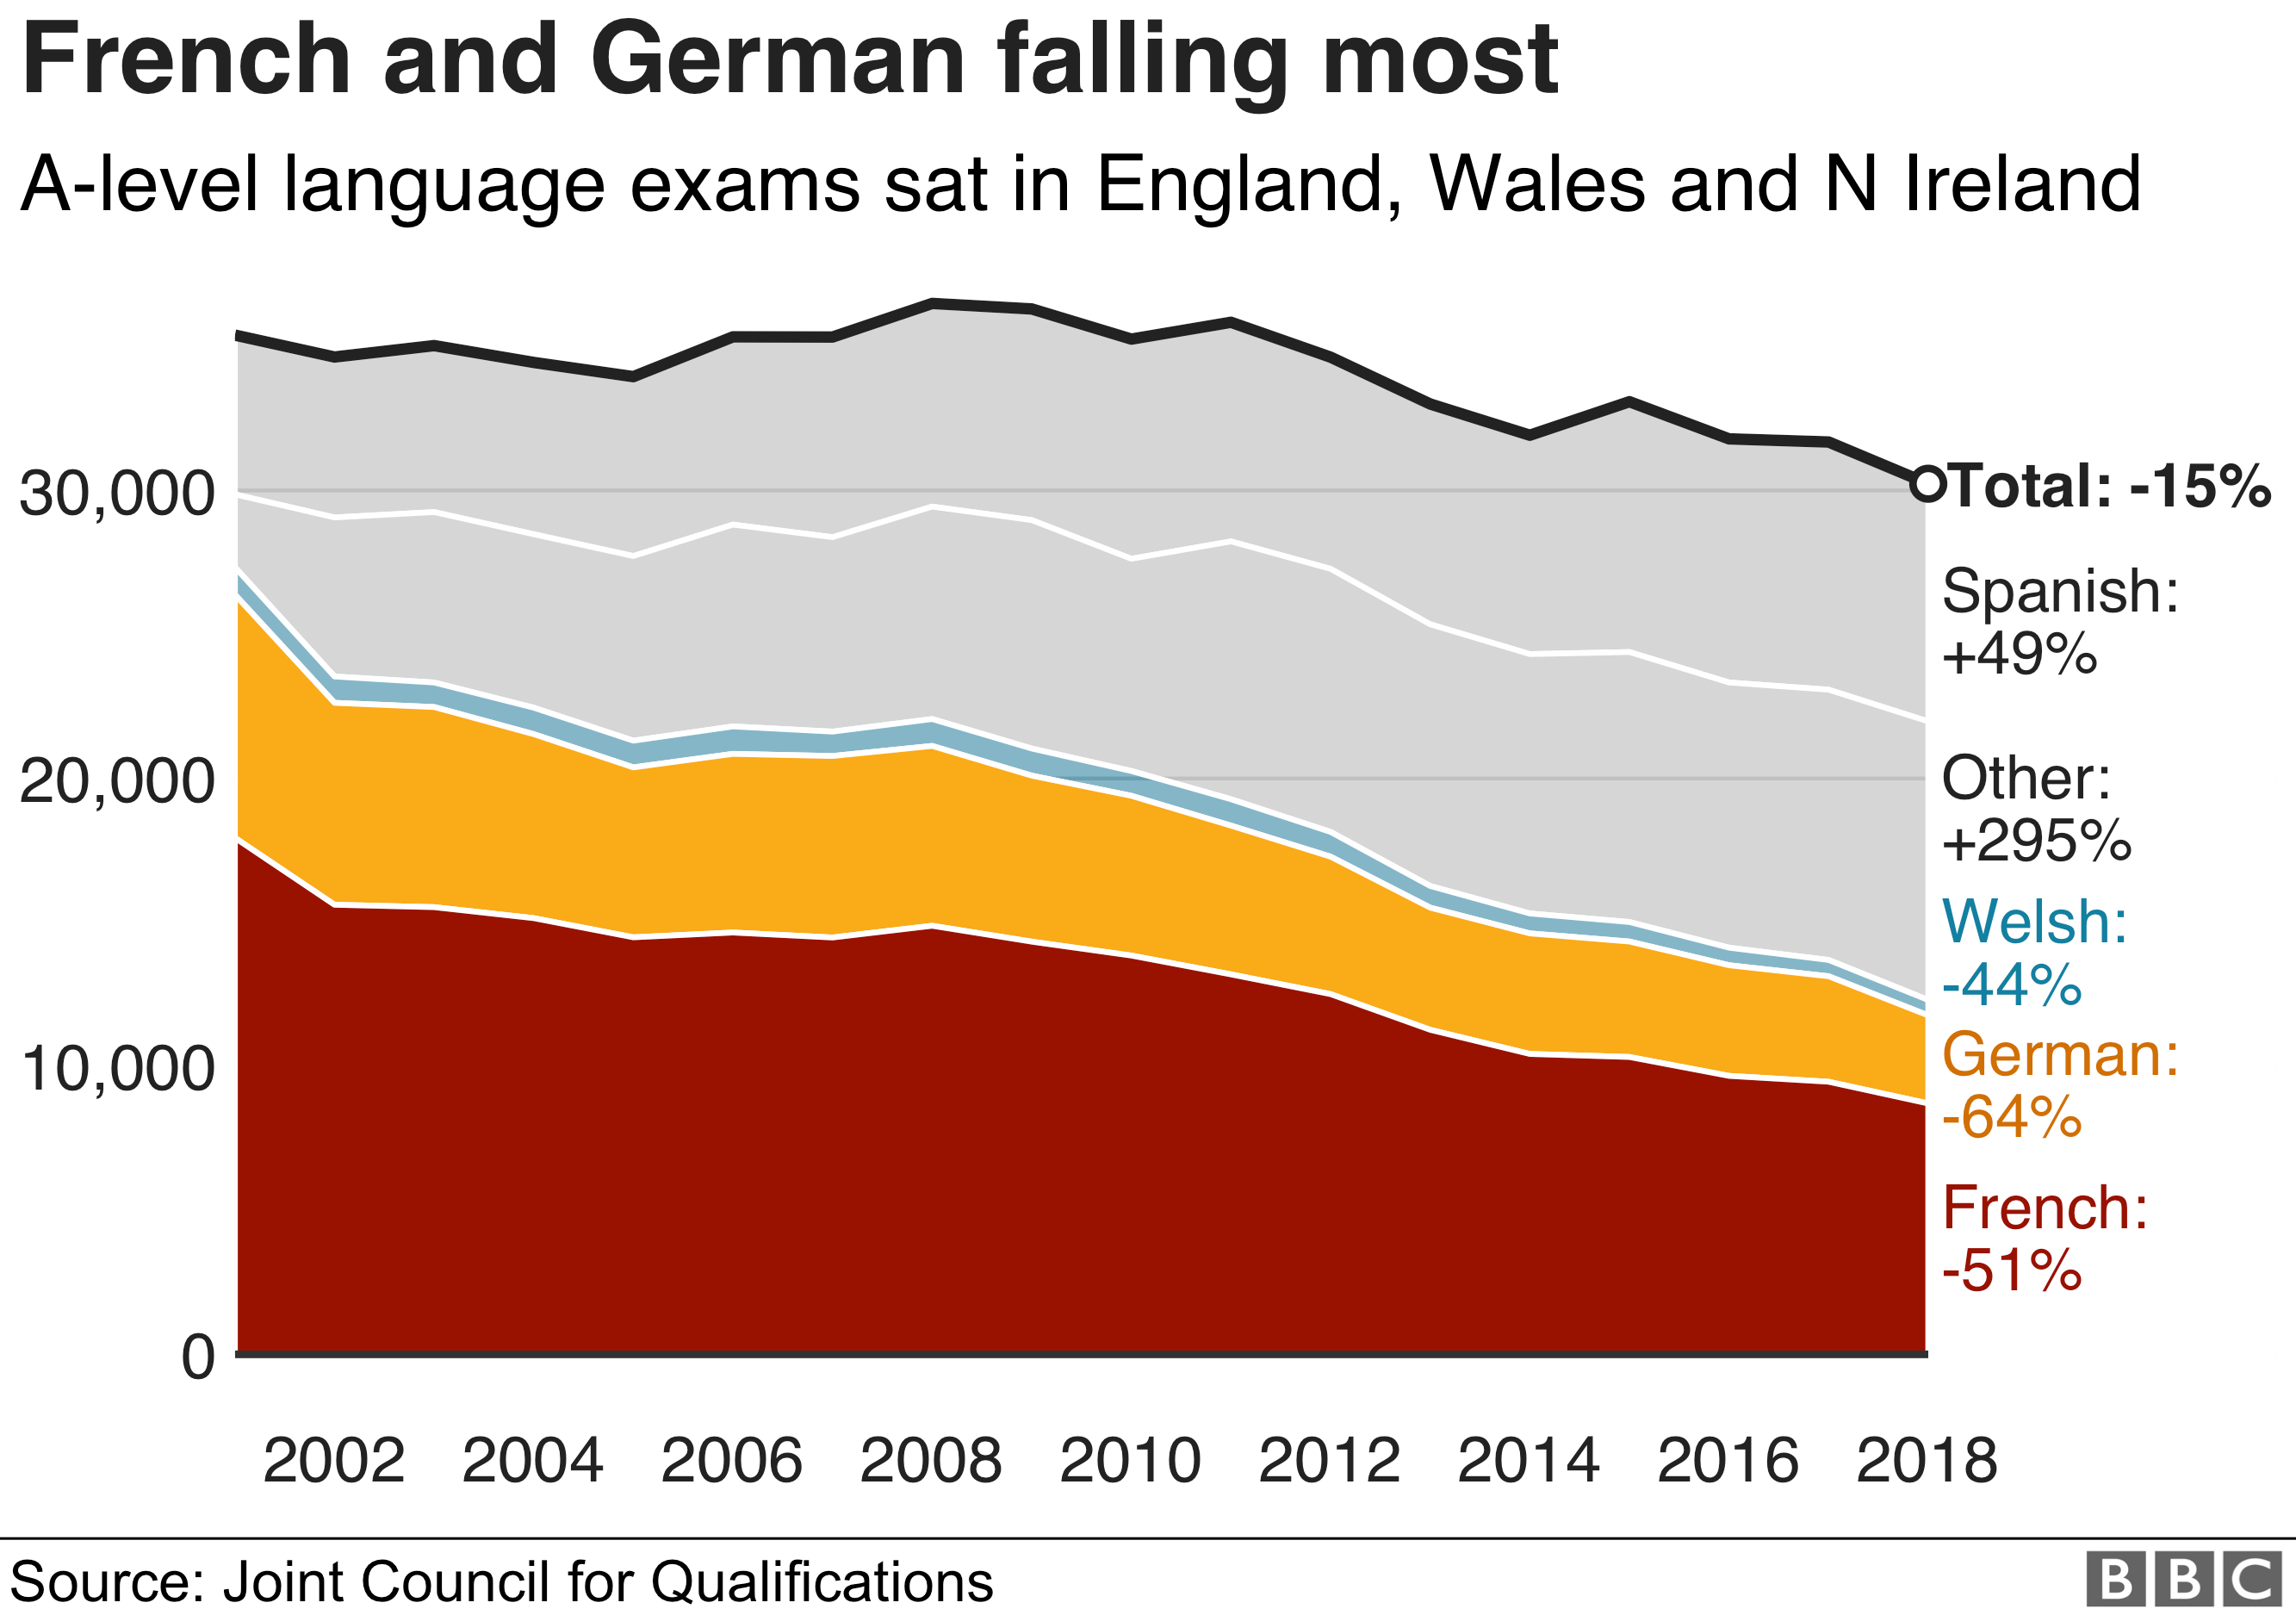 Диаграмма, показывающая, что французы и немцы падают больше всего с точки зрения уровня А в Англии, Уэльсе и Северной Ирландии